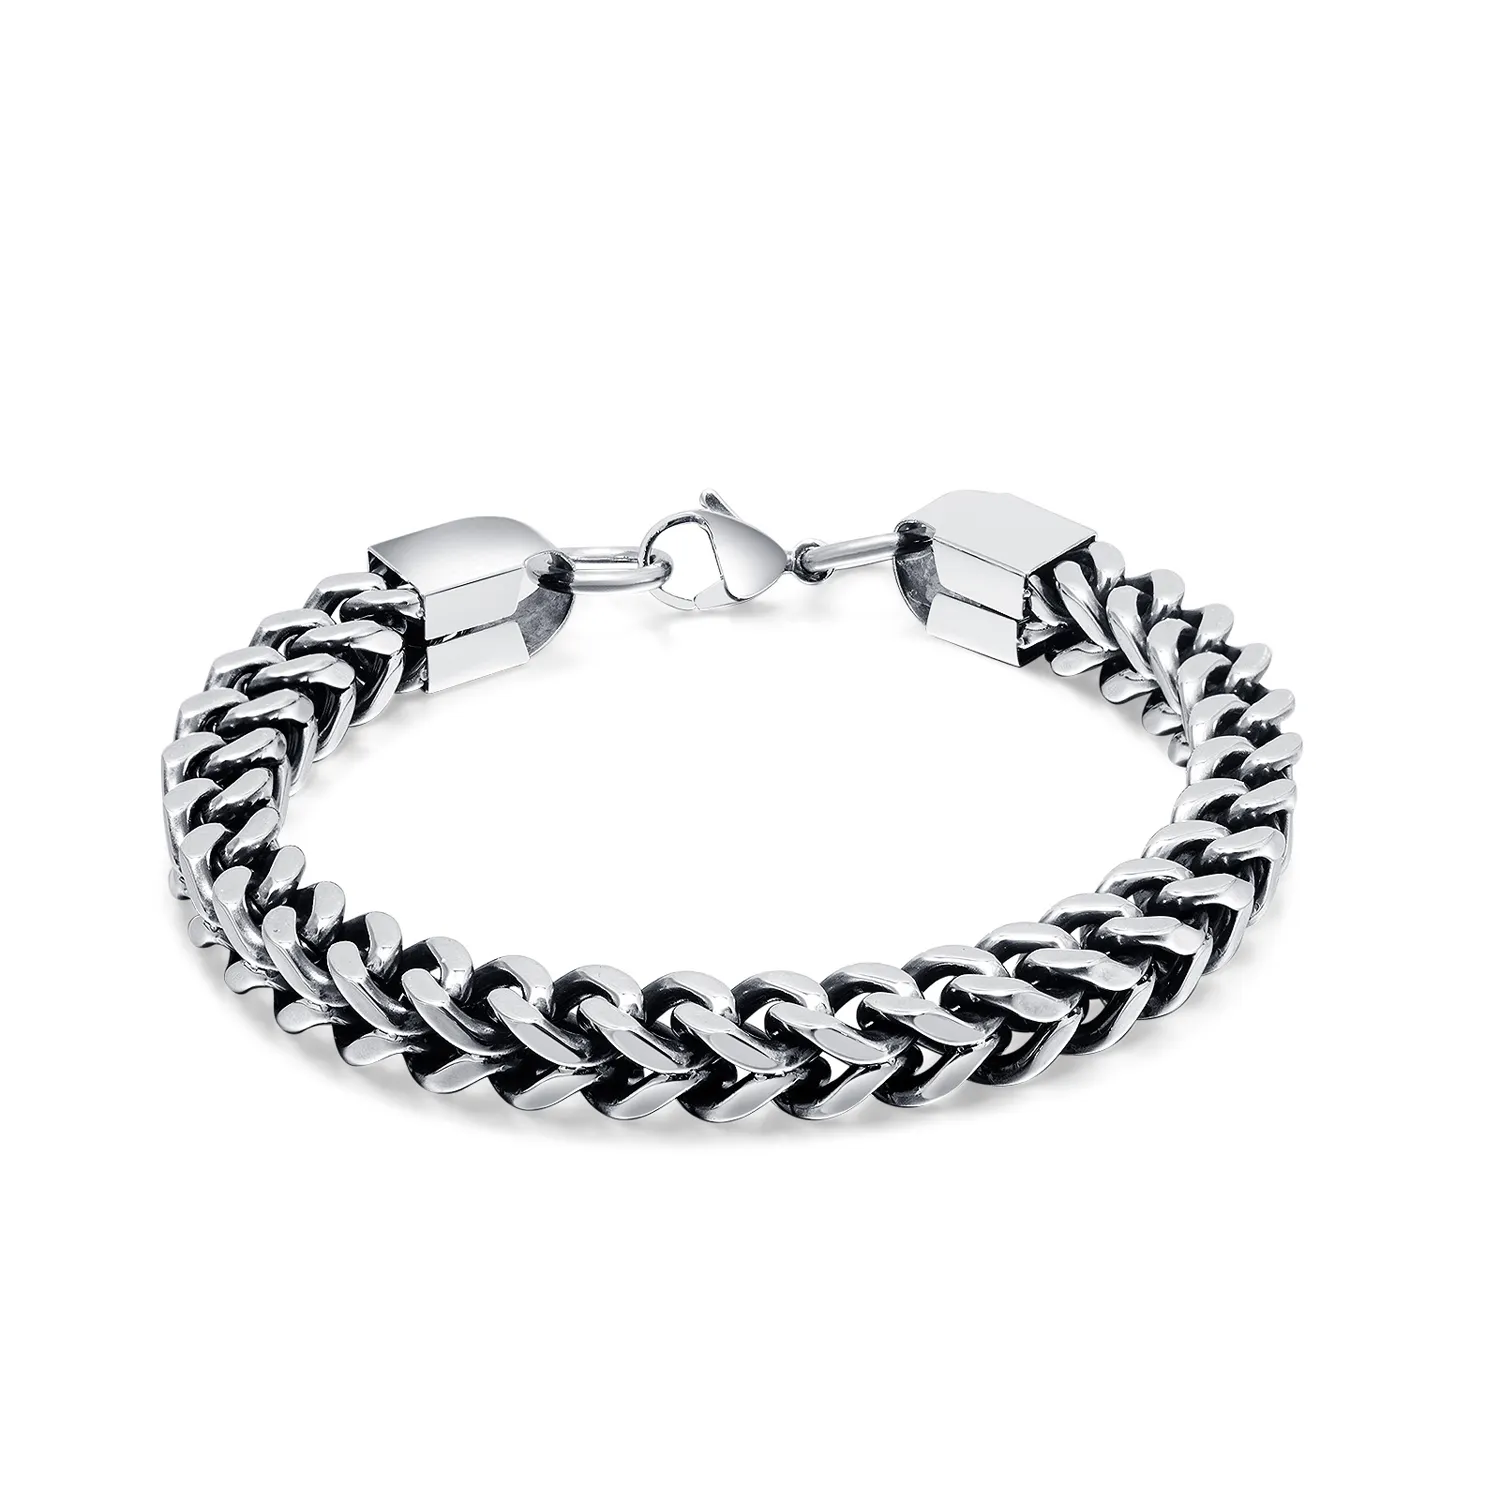 New Wholesale jewelry Trendy 6mm 8mm stainless steel men bracelet